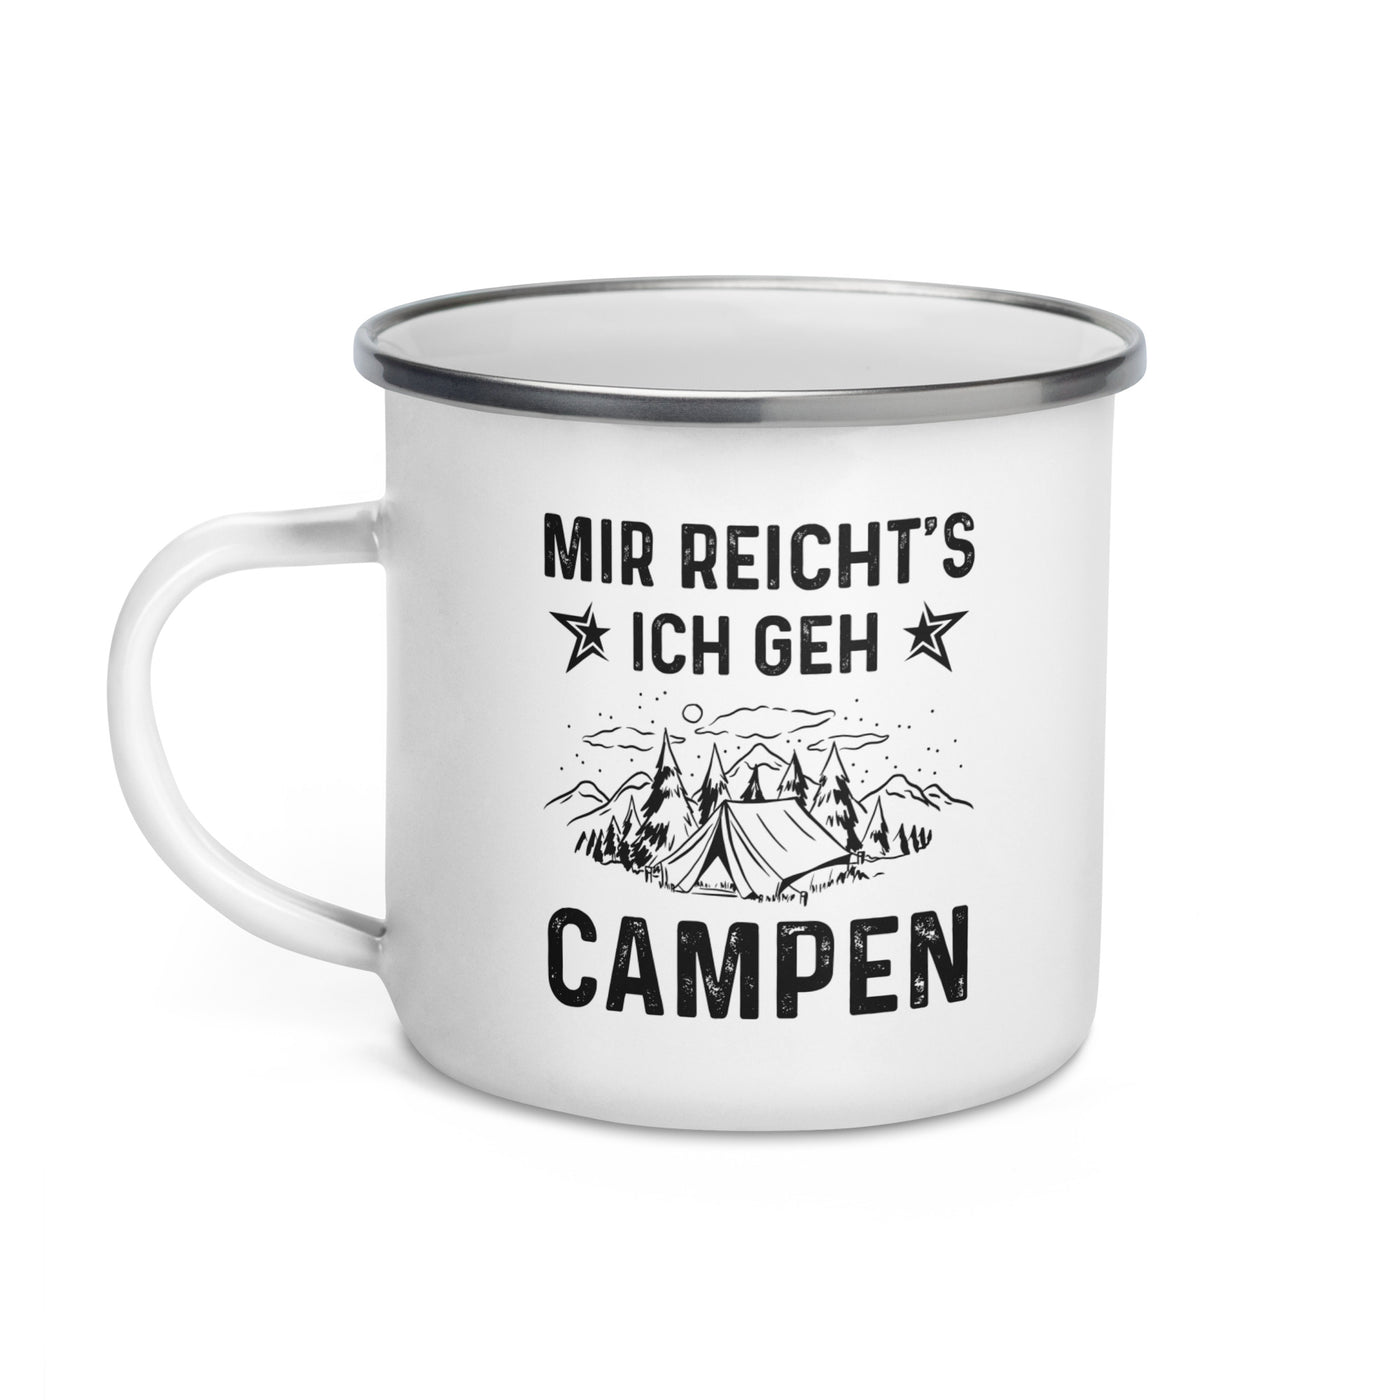 Mir Reicht'S Ich Gen Campen - Emaille Tasse camping